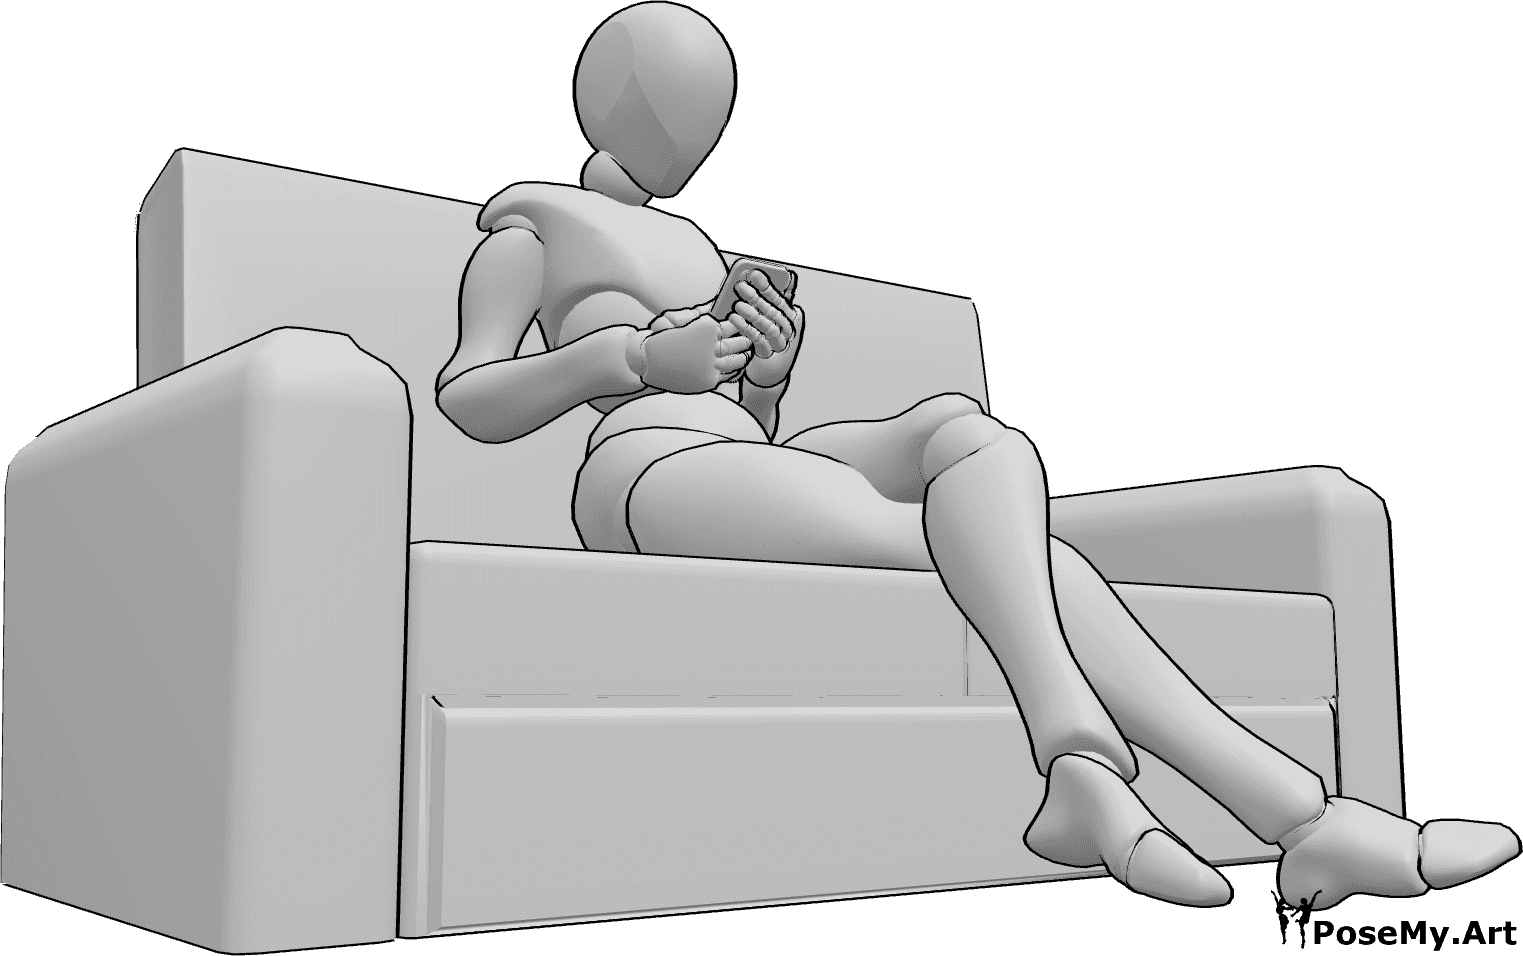 Référence des poses- Assis, téléphone en main - Femme assise sur le canapé, les jambes croisées, tenant son téléphone des deux mains.